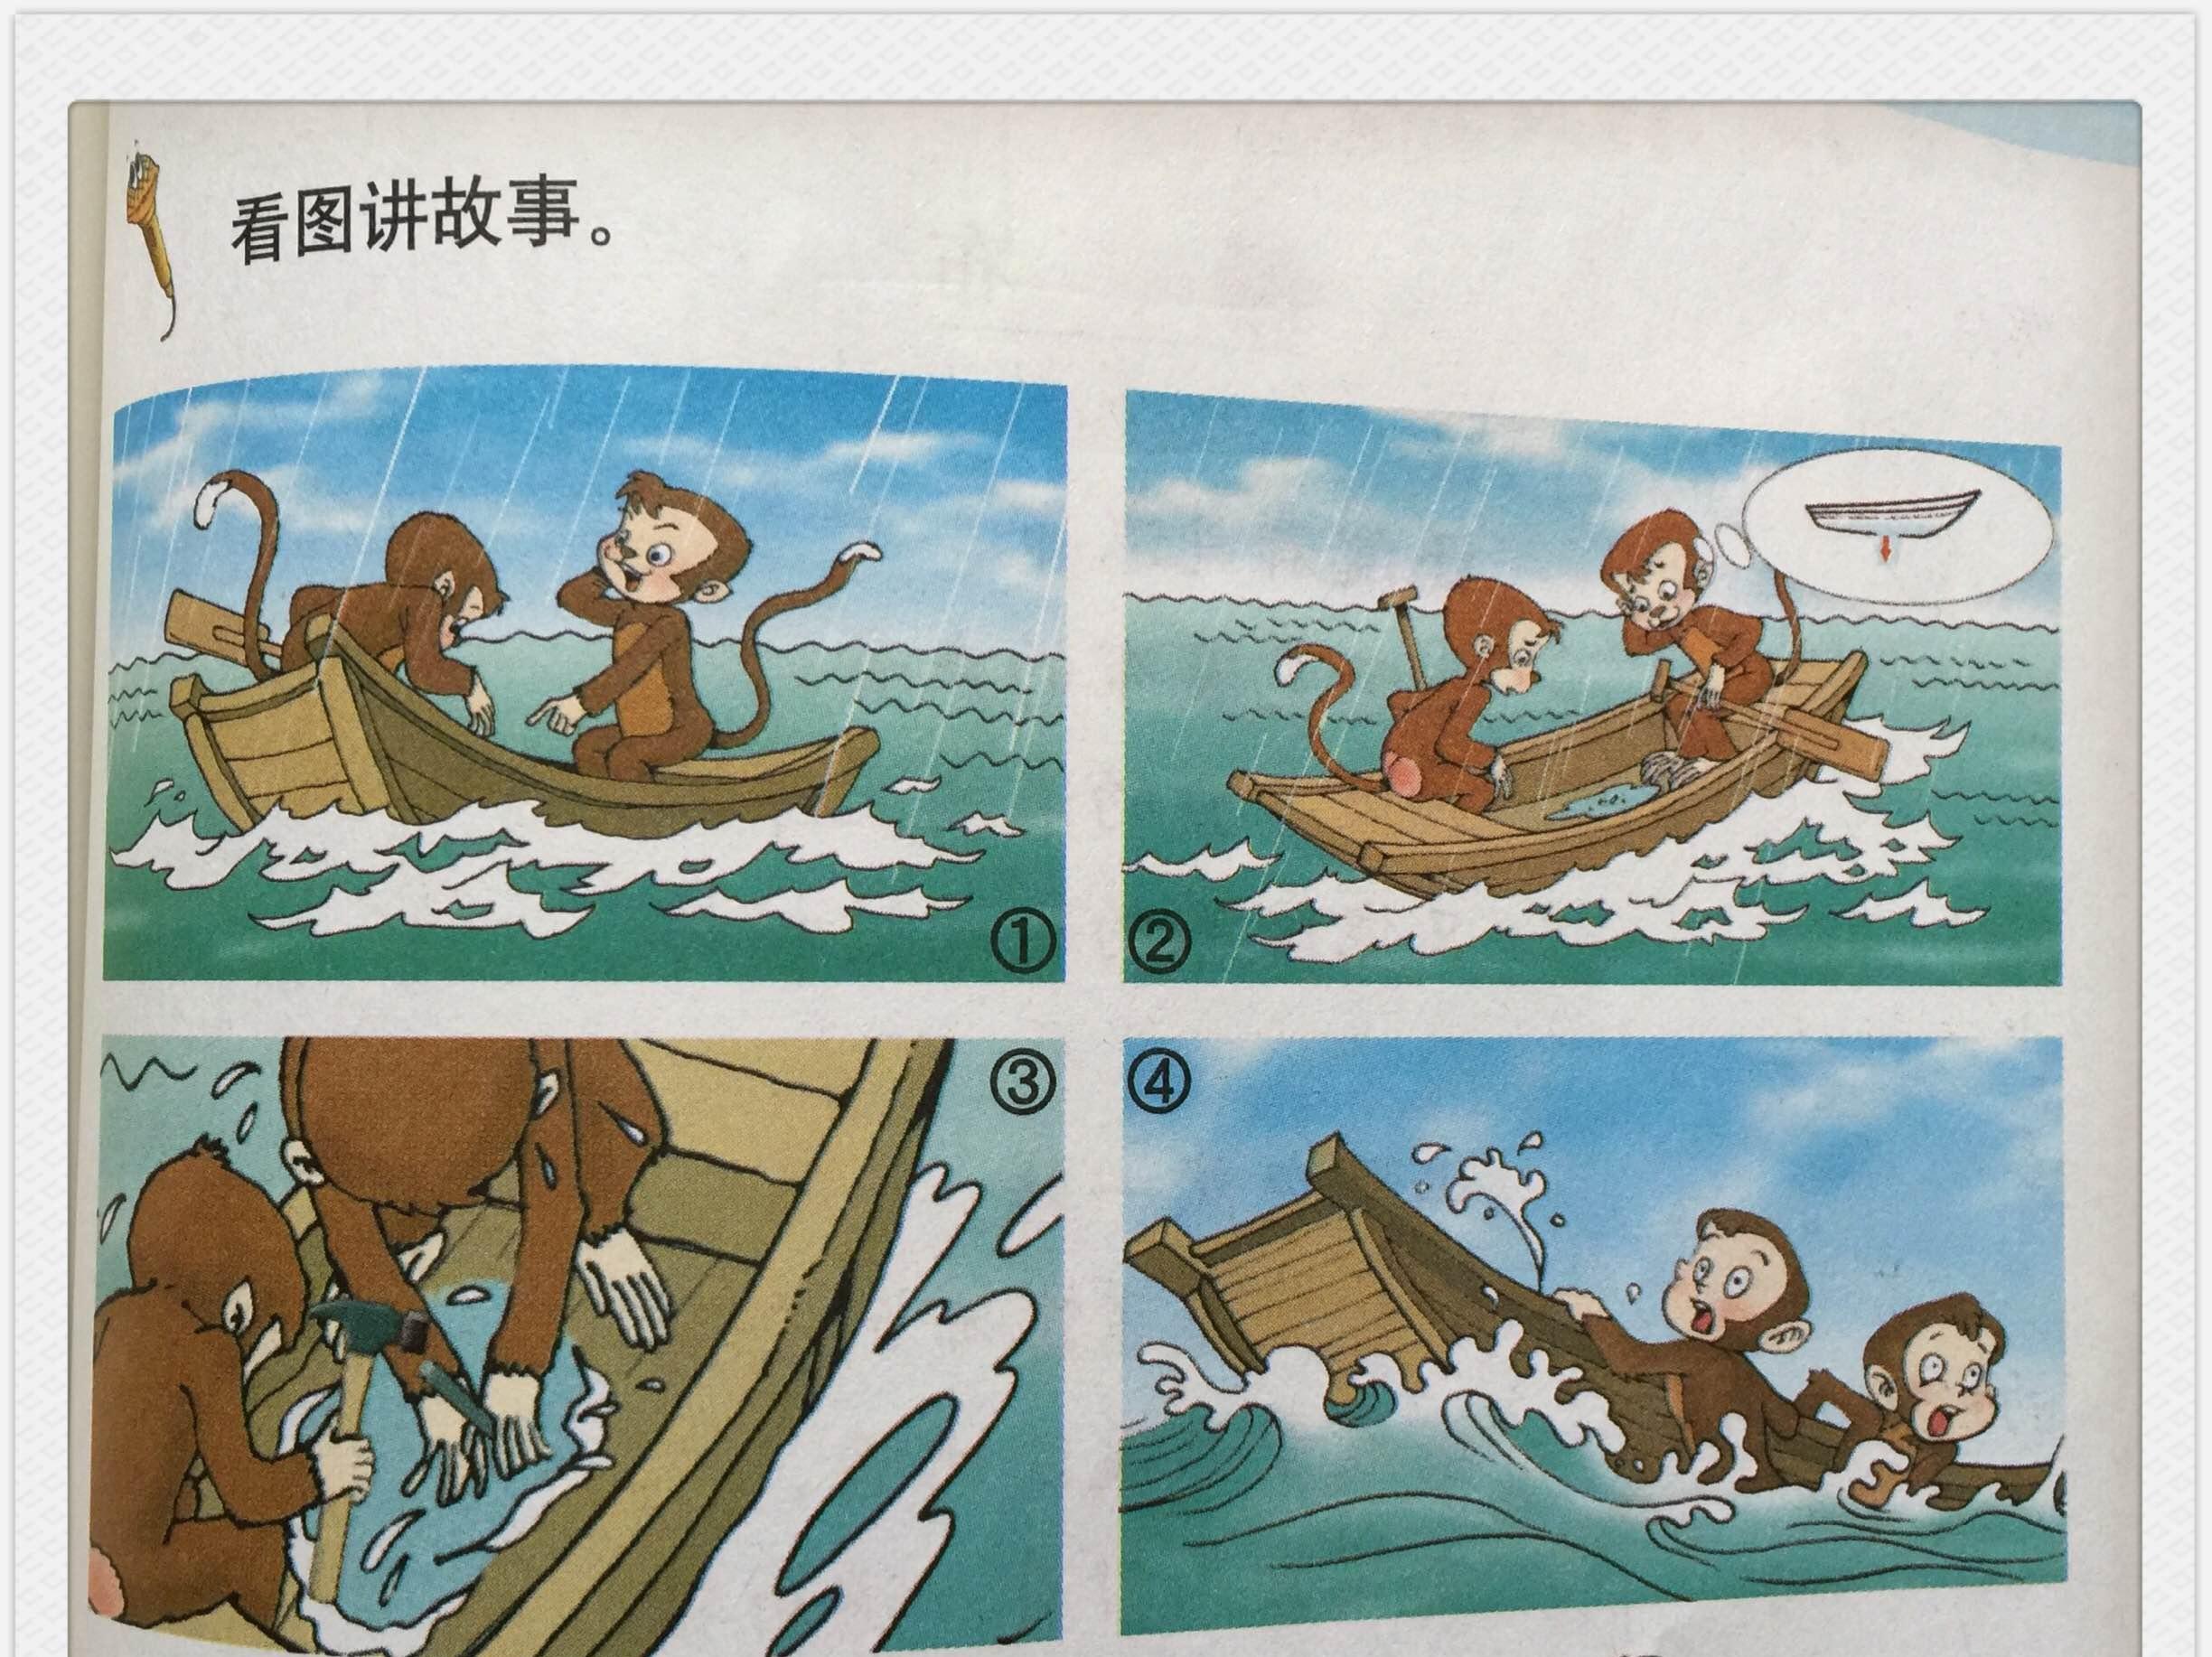 二年级看图作文:猴子的遭遇